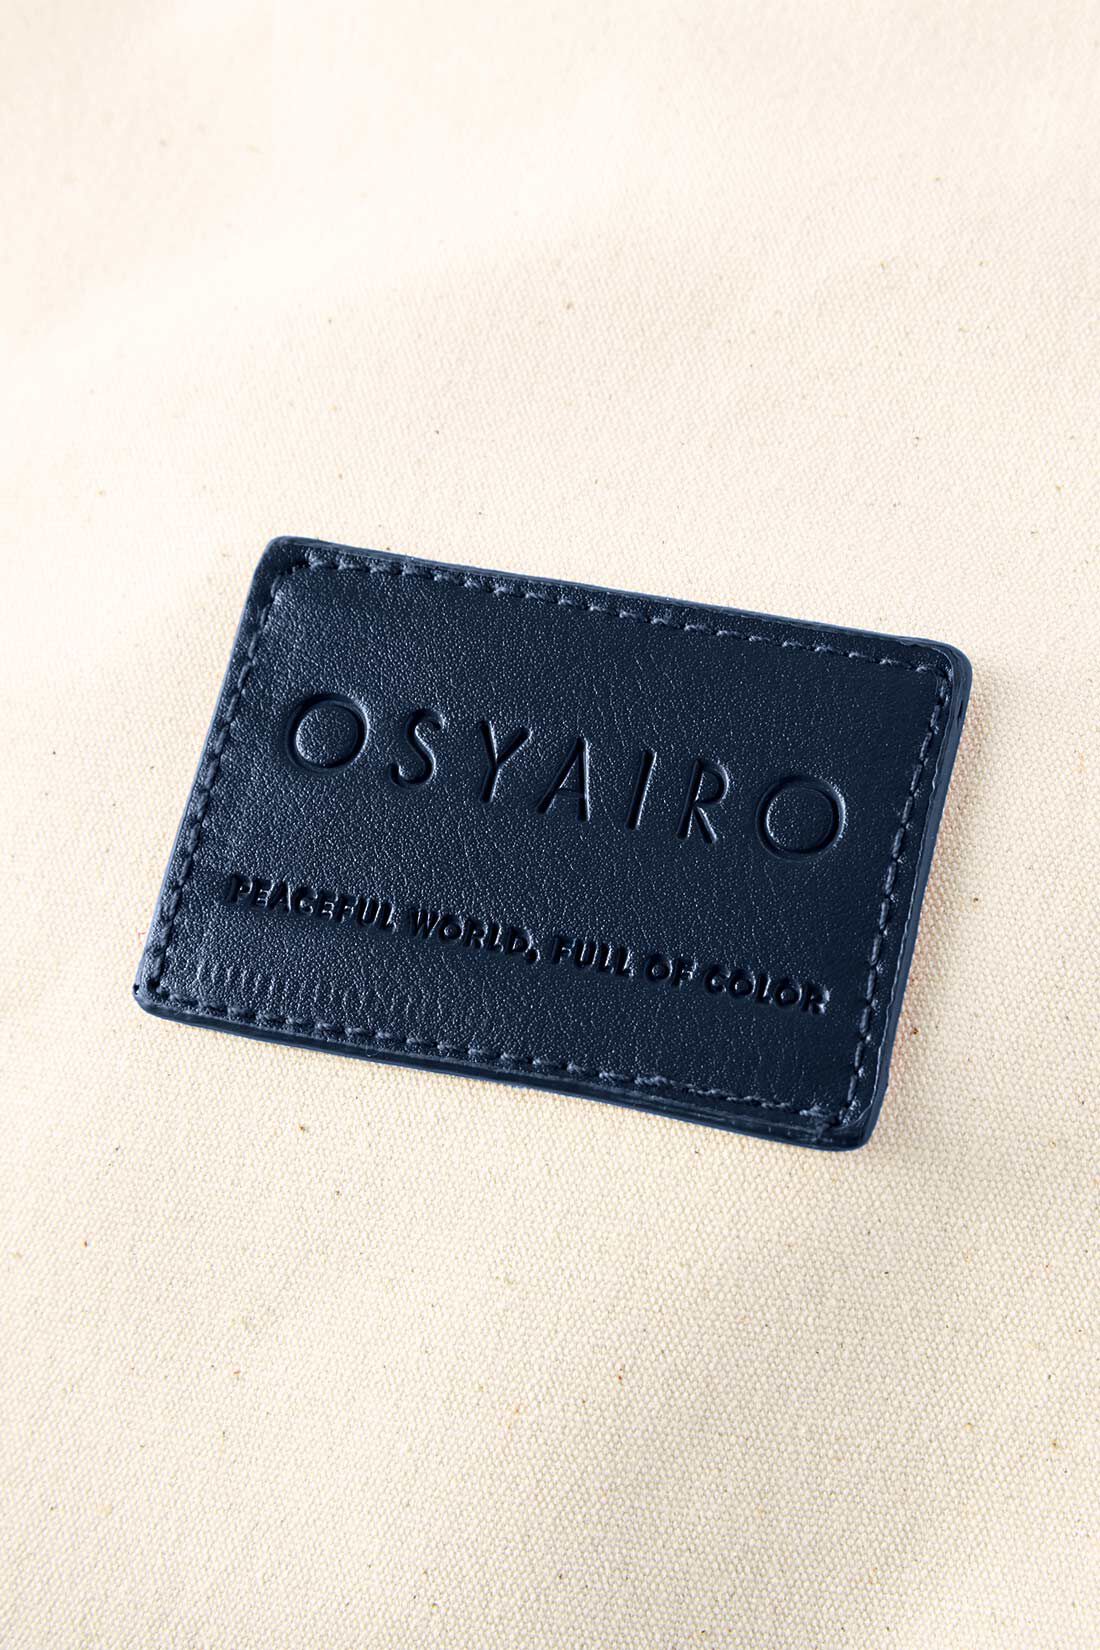 OSYAIRO|OSYAIRO  自立して便利！ 推しが入るポーチ付き バイカラーうちわバッグ〈ブルー〉